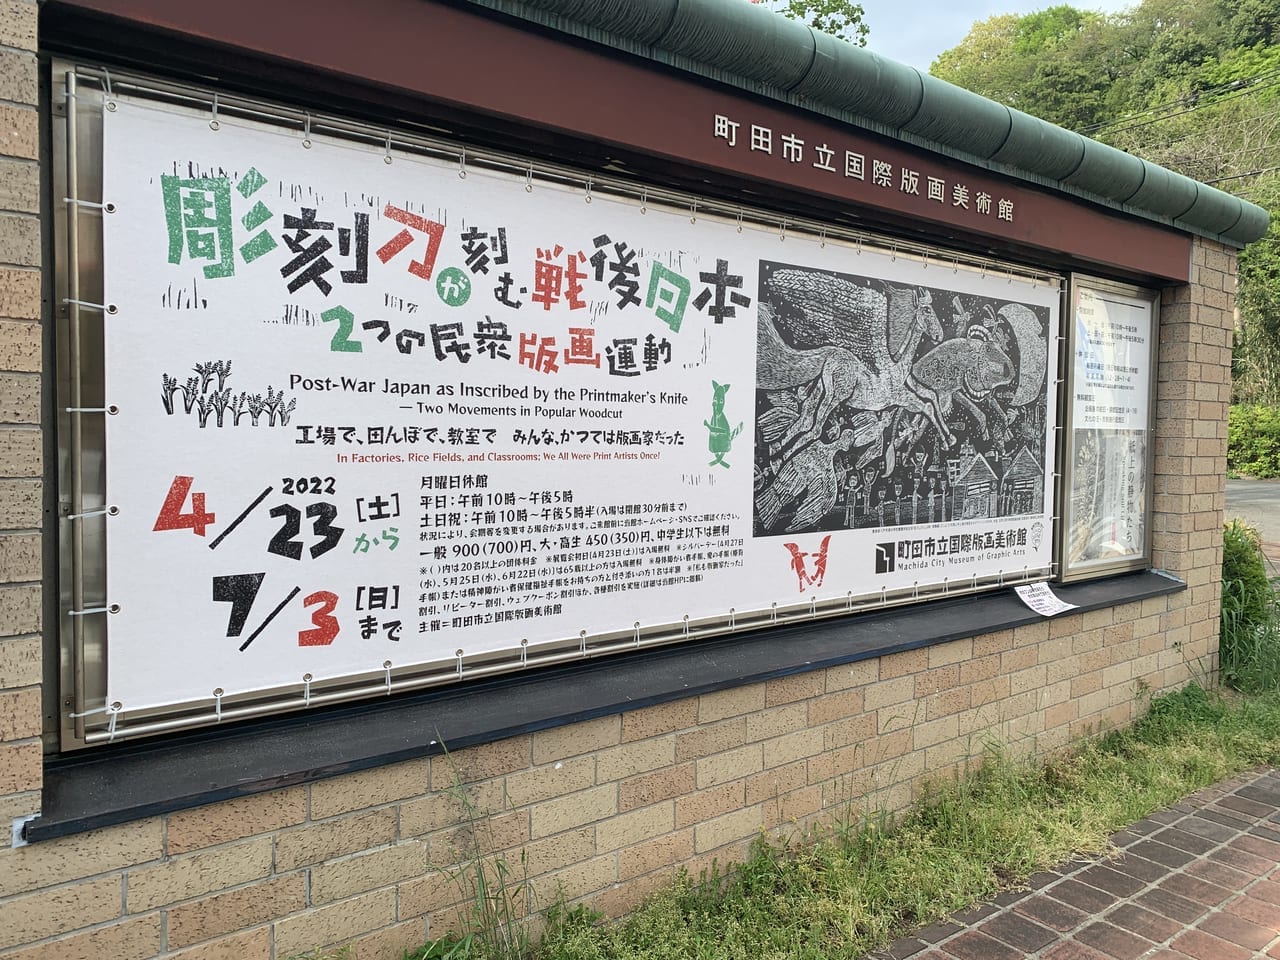 町田市立国際版画美術館で彫刻刀が刻む戦後日本4